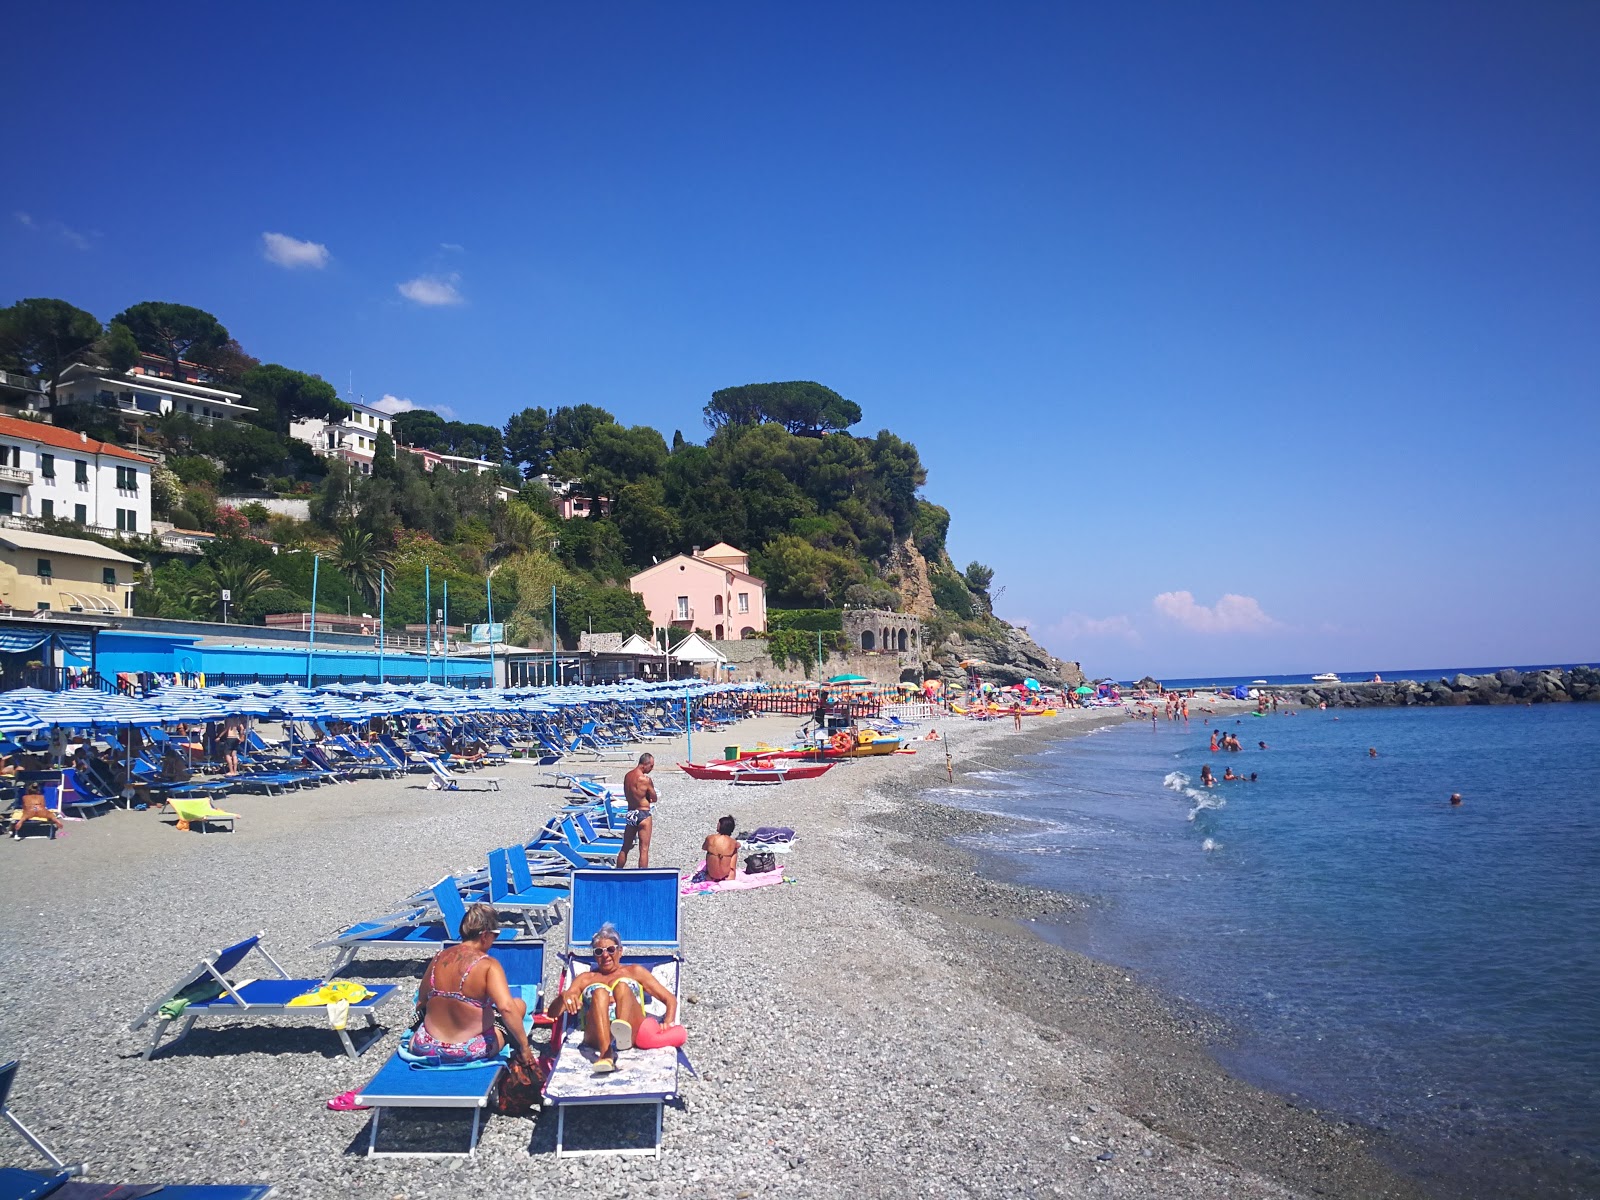 Zdjęcie L'Ultima Spiaggia z powierzchnią piasek z kamykami